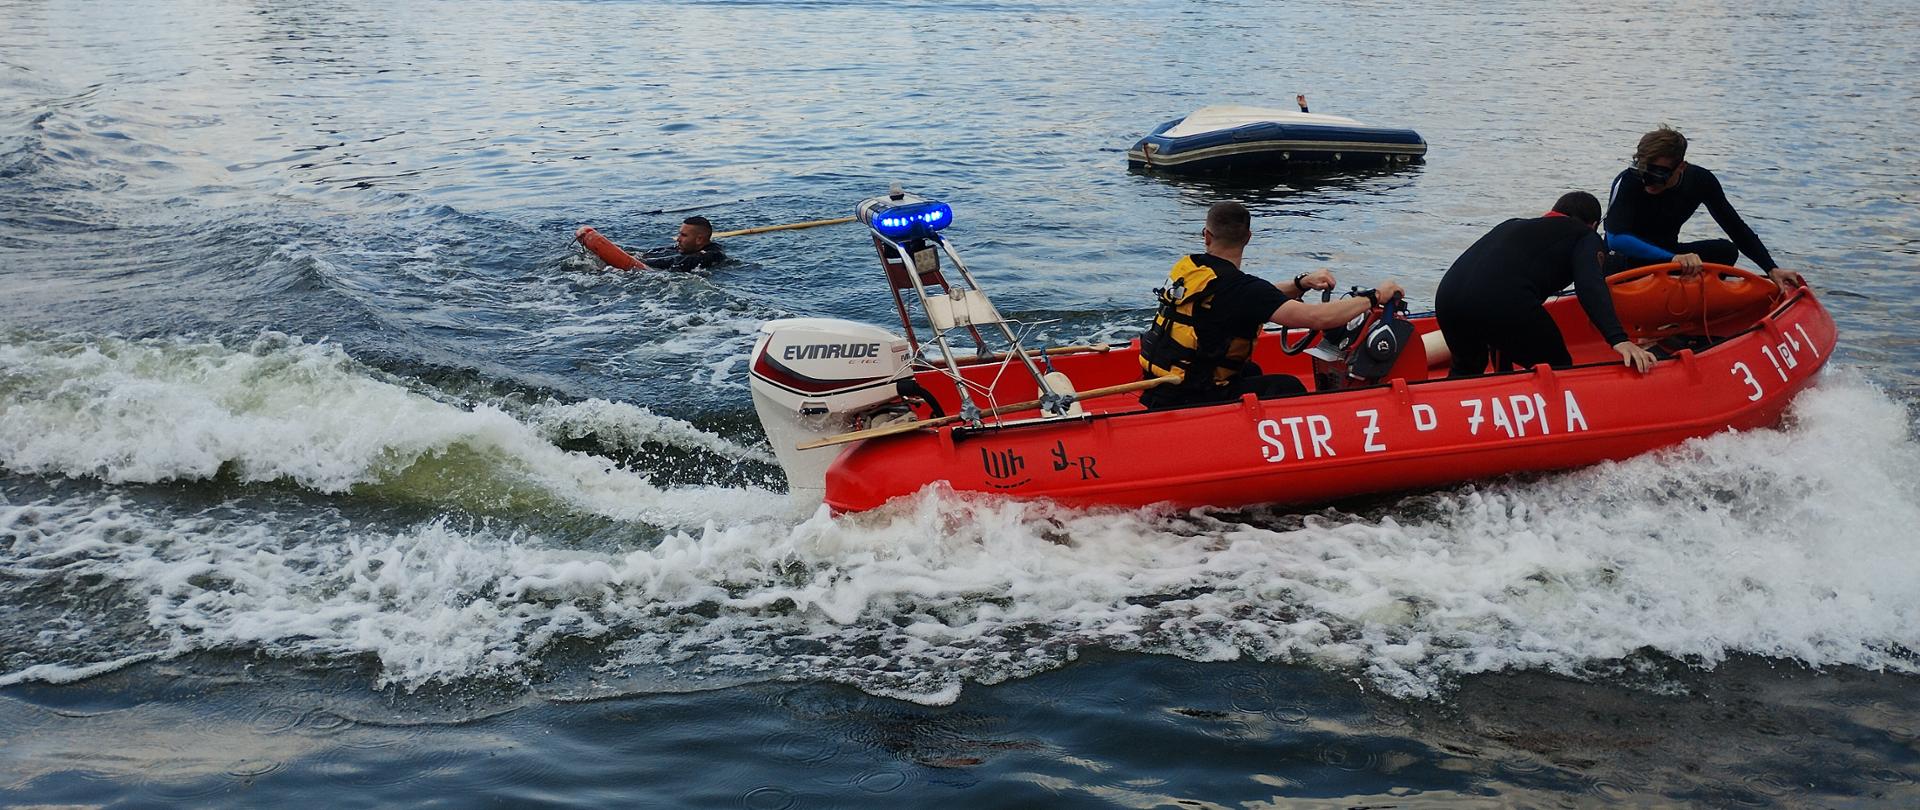 Na zdjęciu widać łódź strażacką w wodzie 